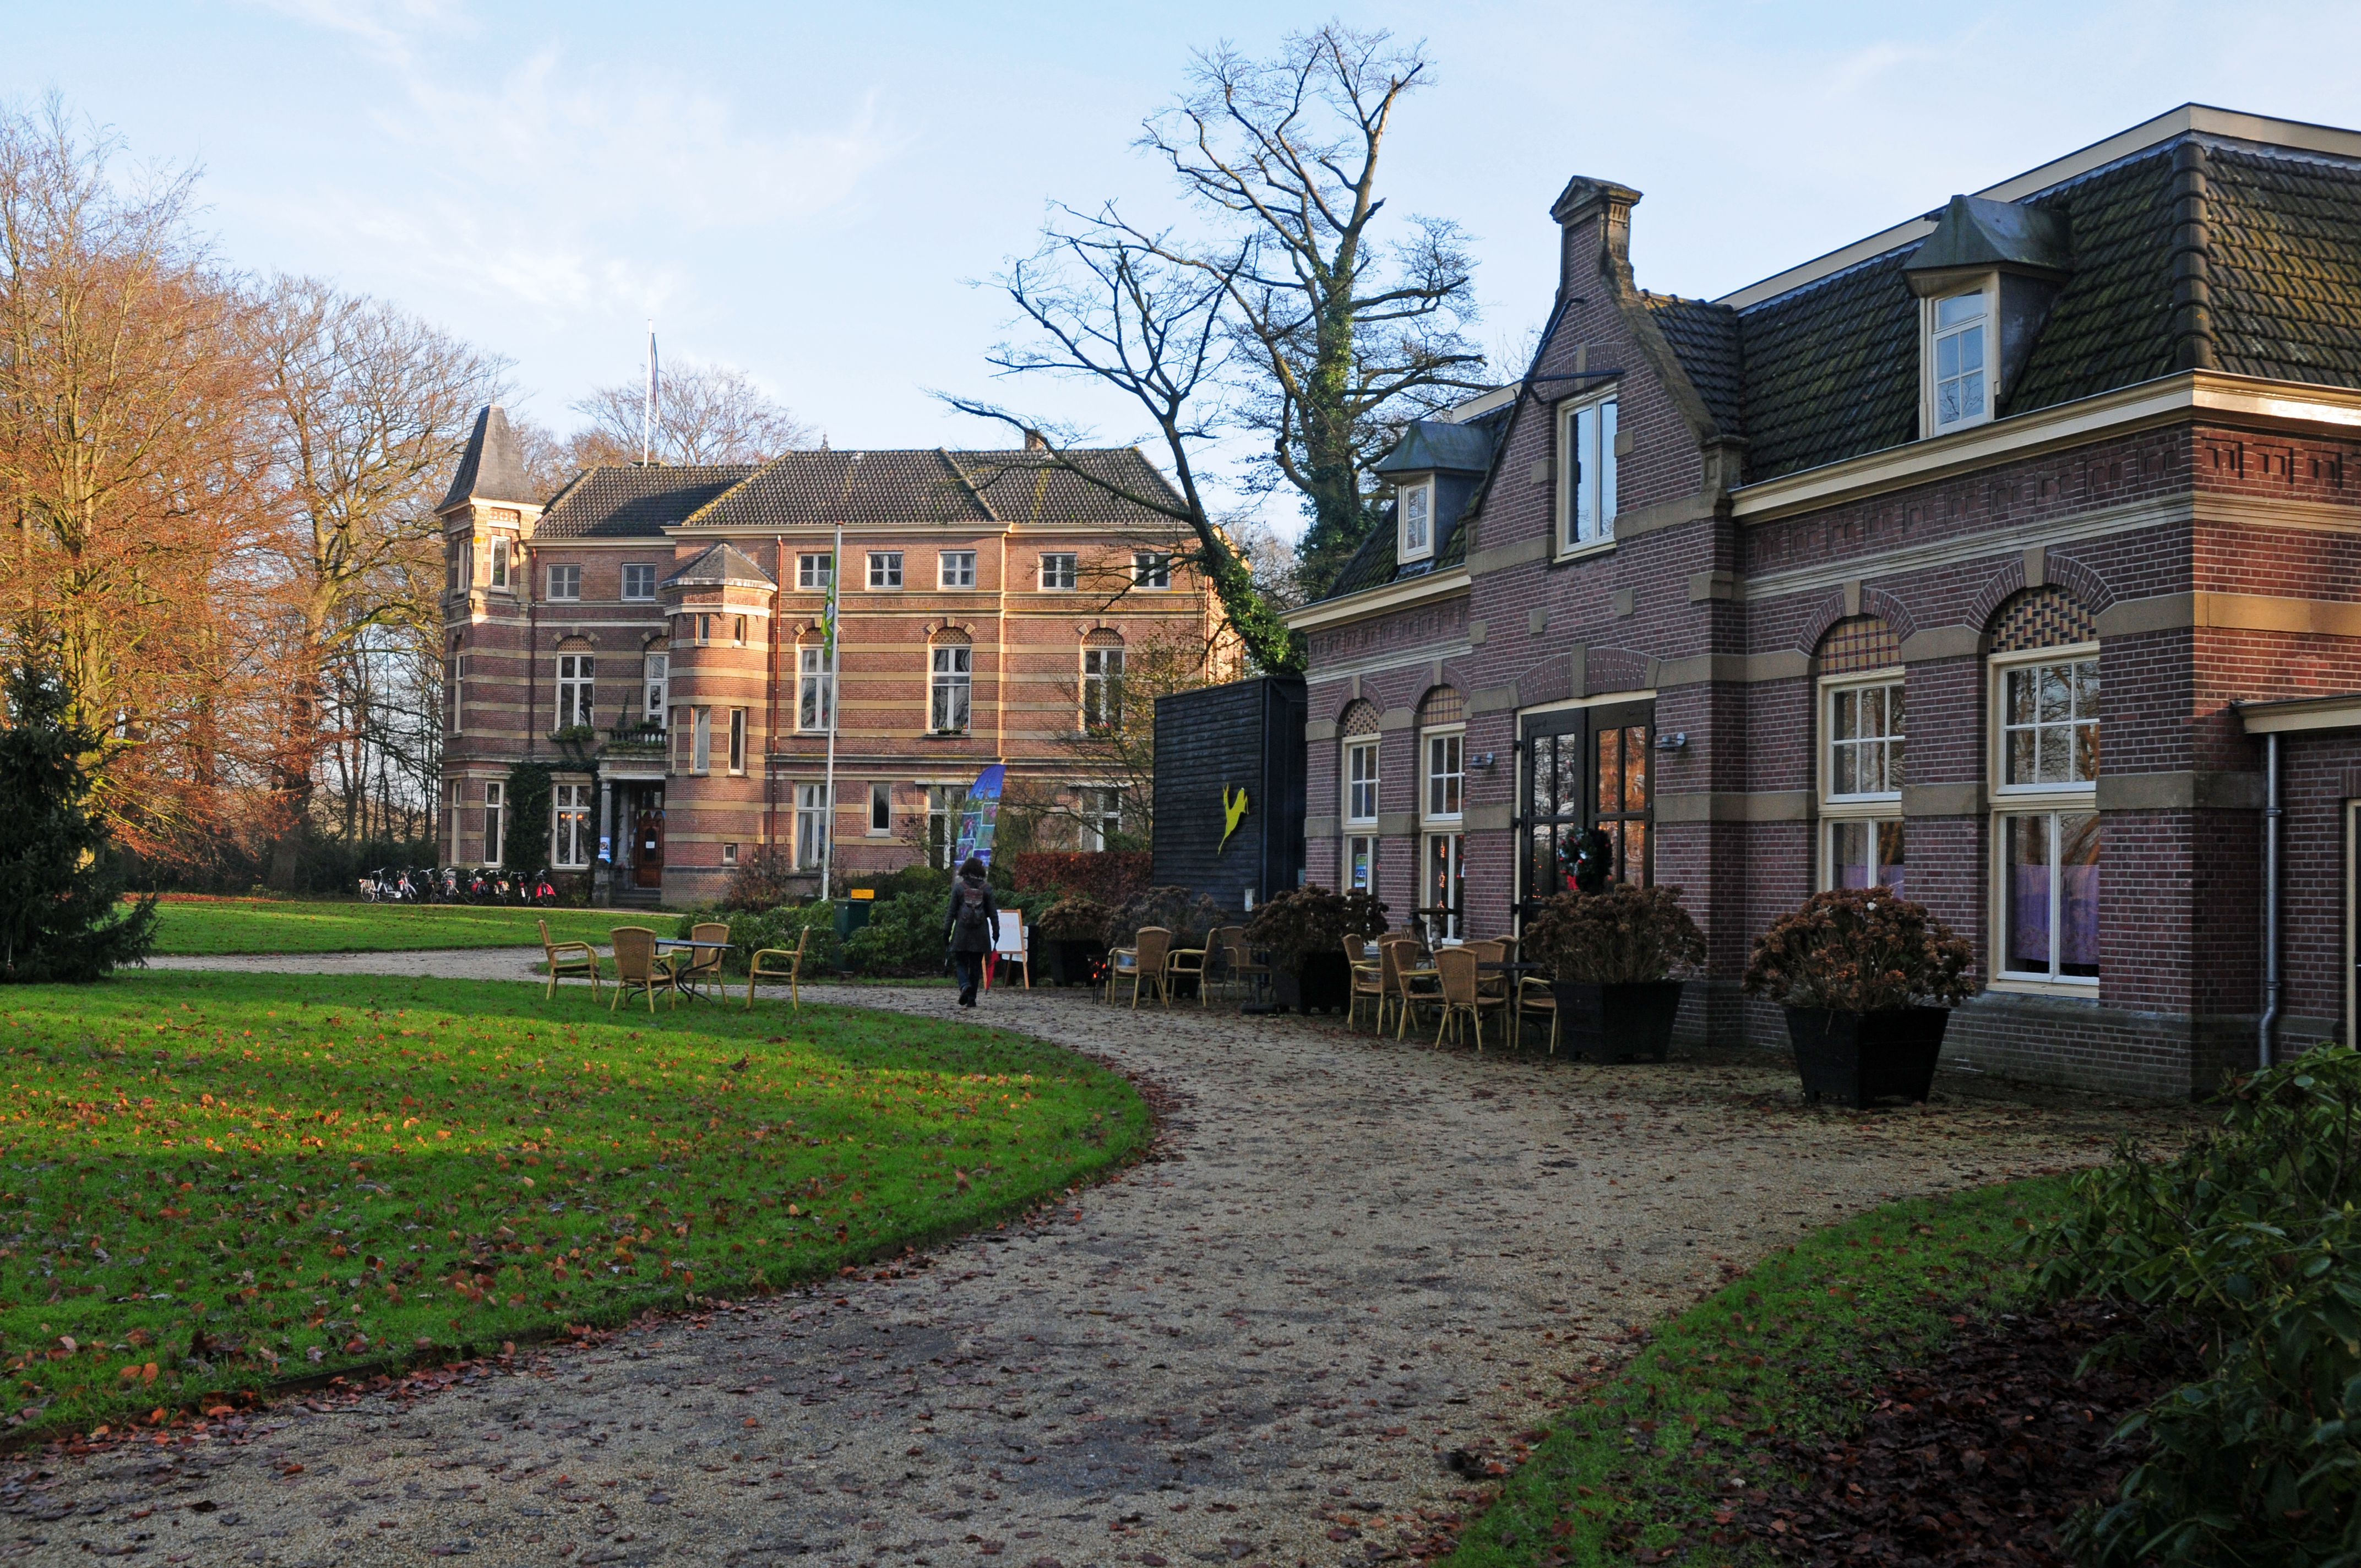 Utrechts Landschap - Koetshuis Stoutenburg 